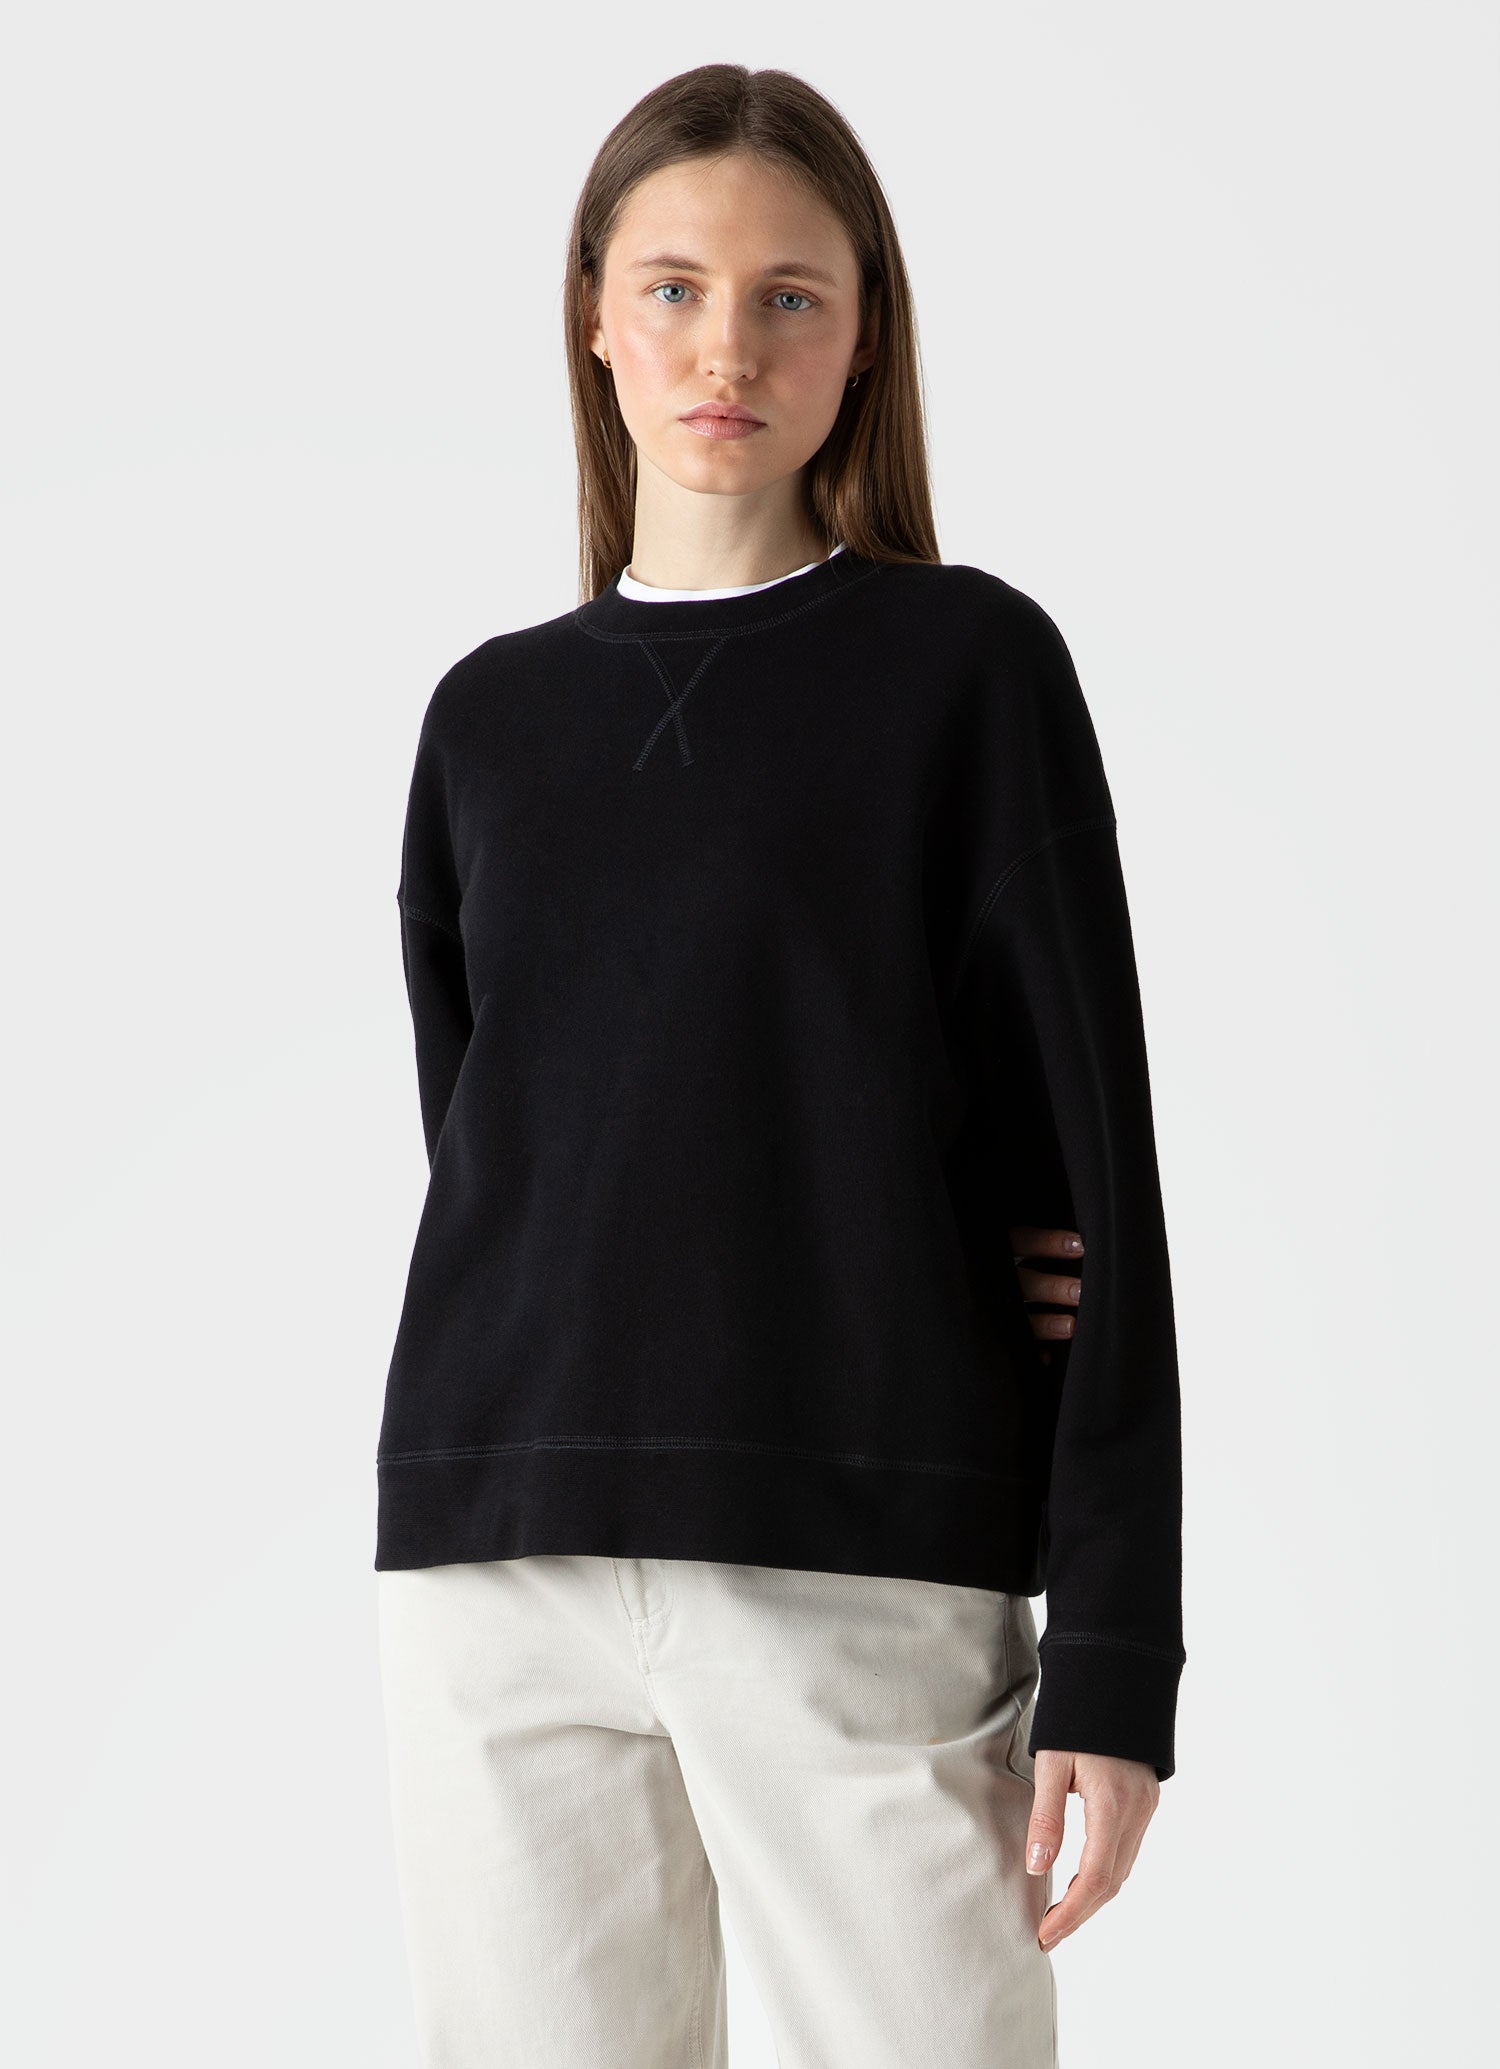 Women's Relaxed Loopback Sweatshirt in Black | Sunspel